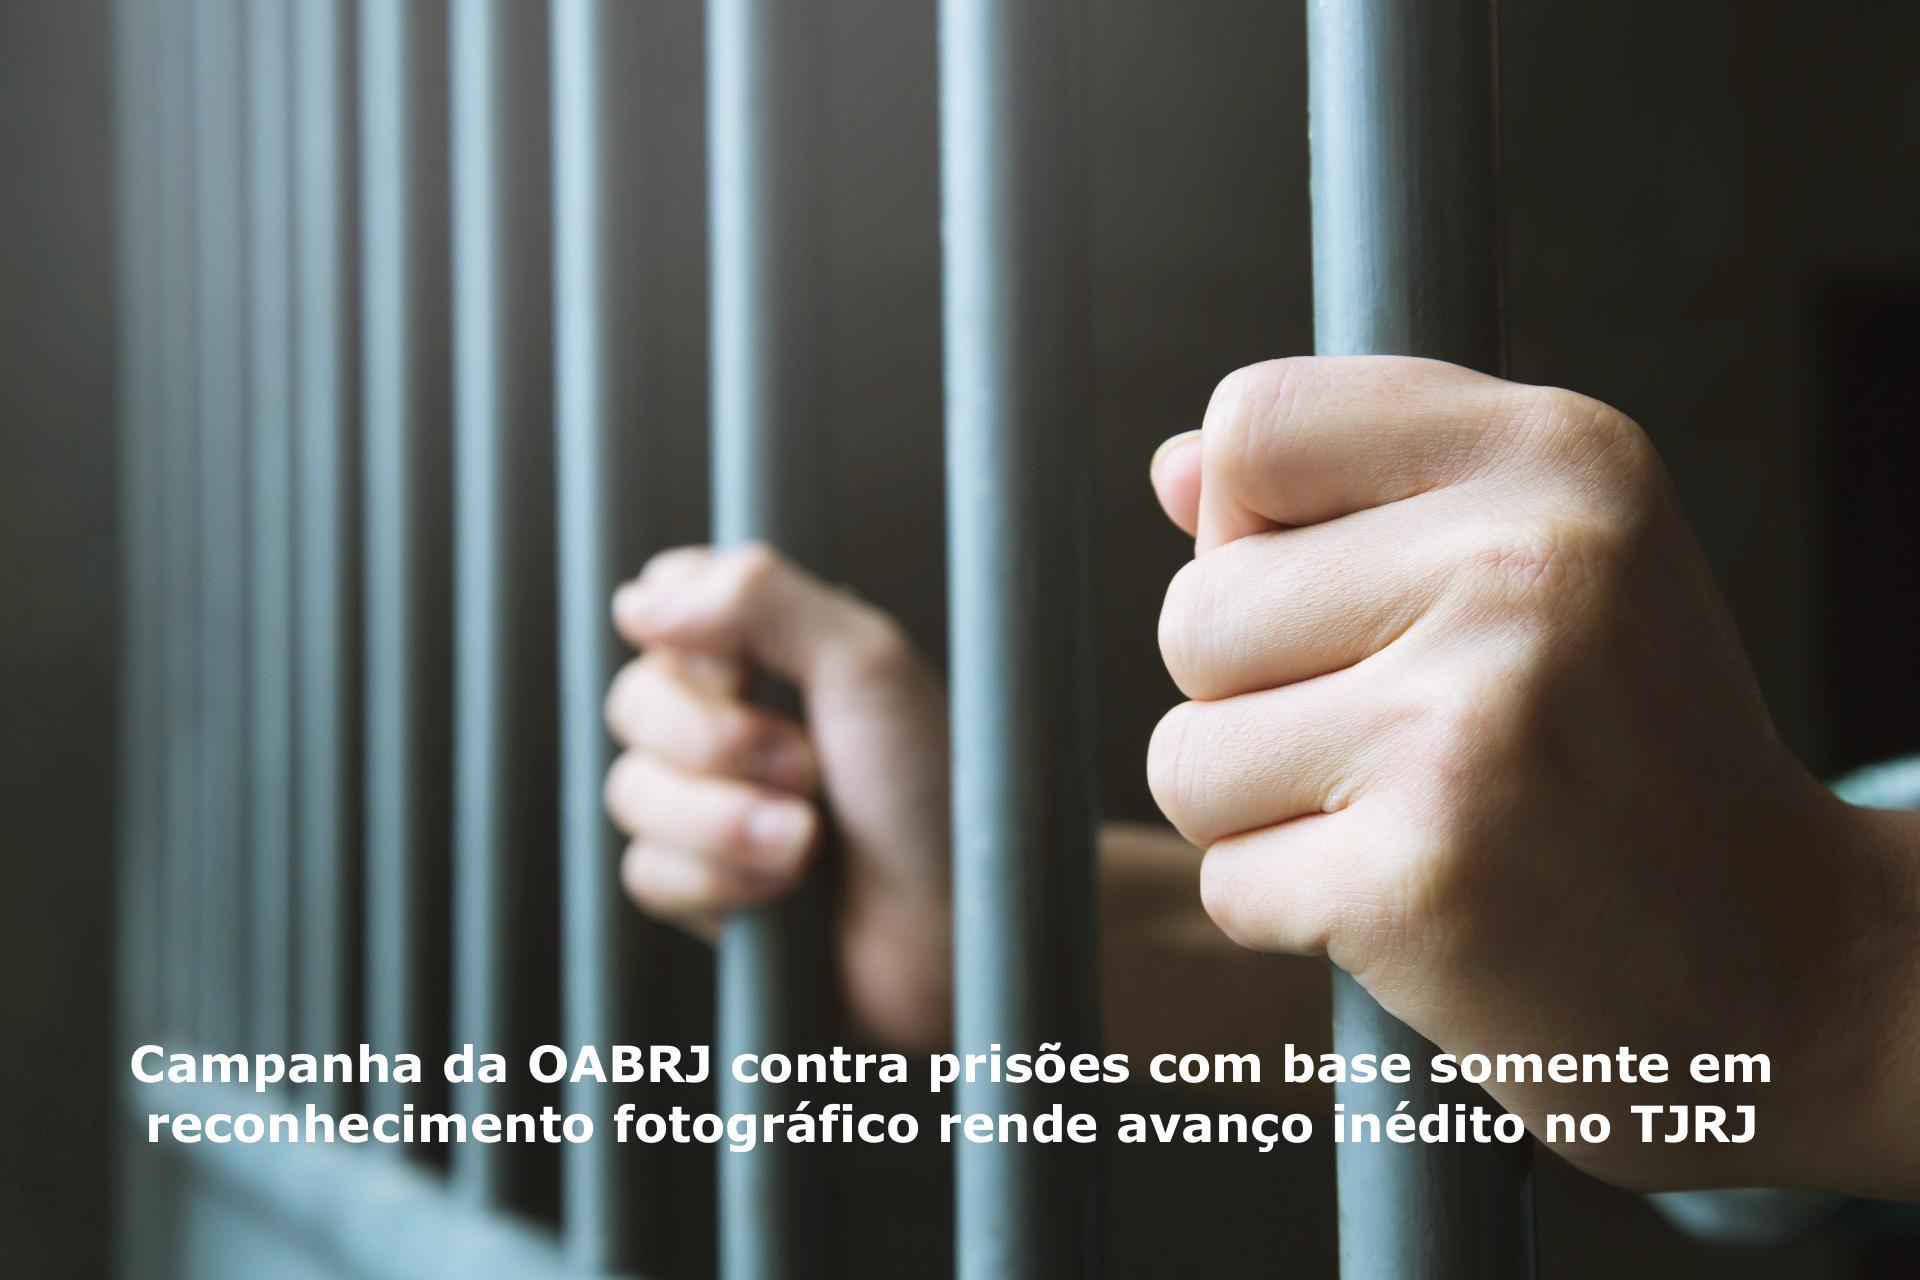 Campanha da OABRJ contra prisões com base somente em reconhecimento fotográfico rende avanço inédito no TJRJ